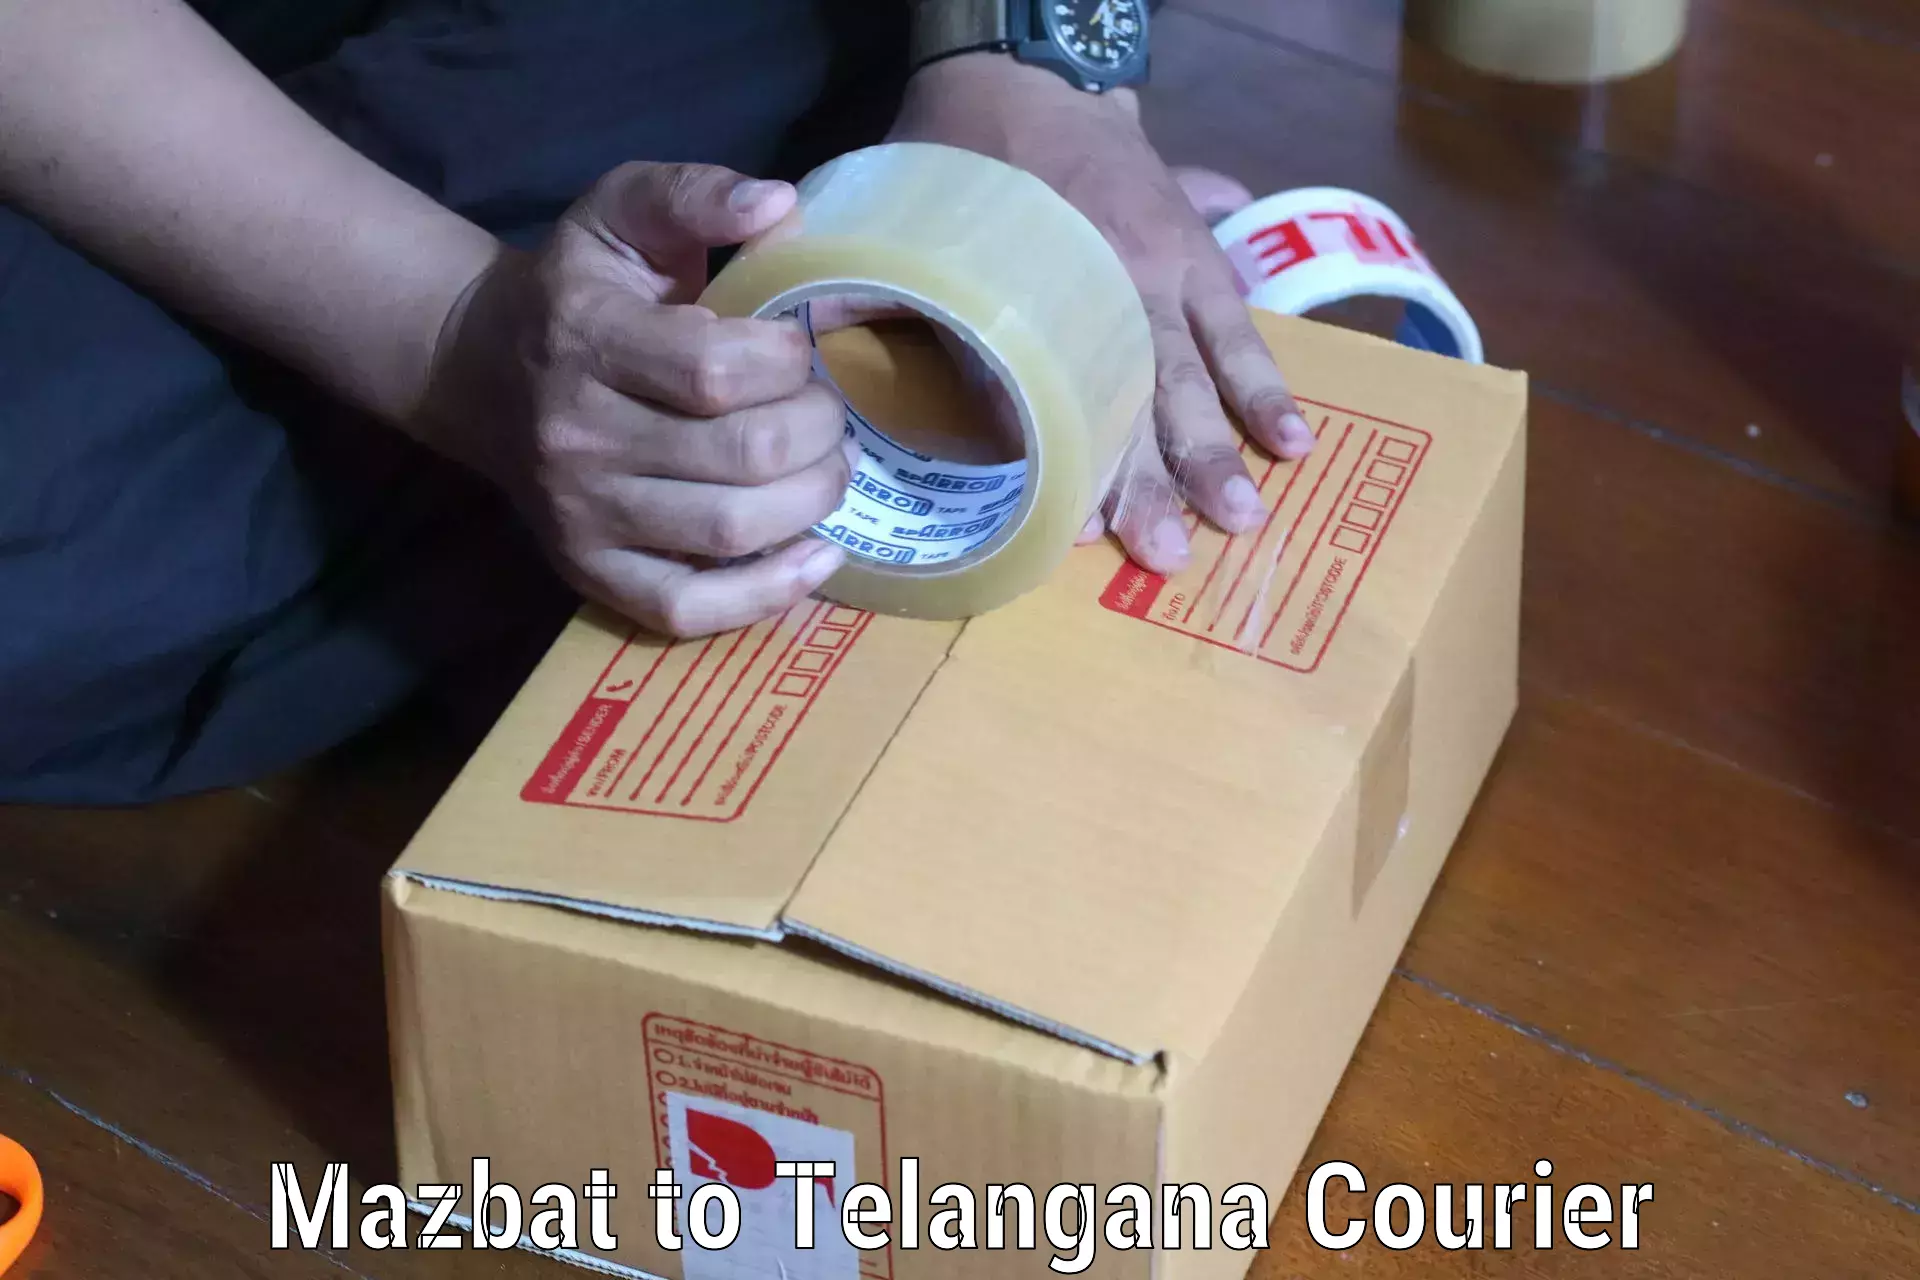 Advanced shipping network Mazbat to Yellandu